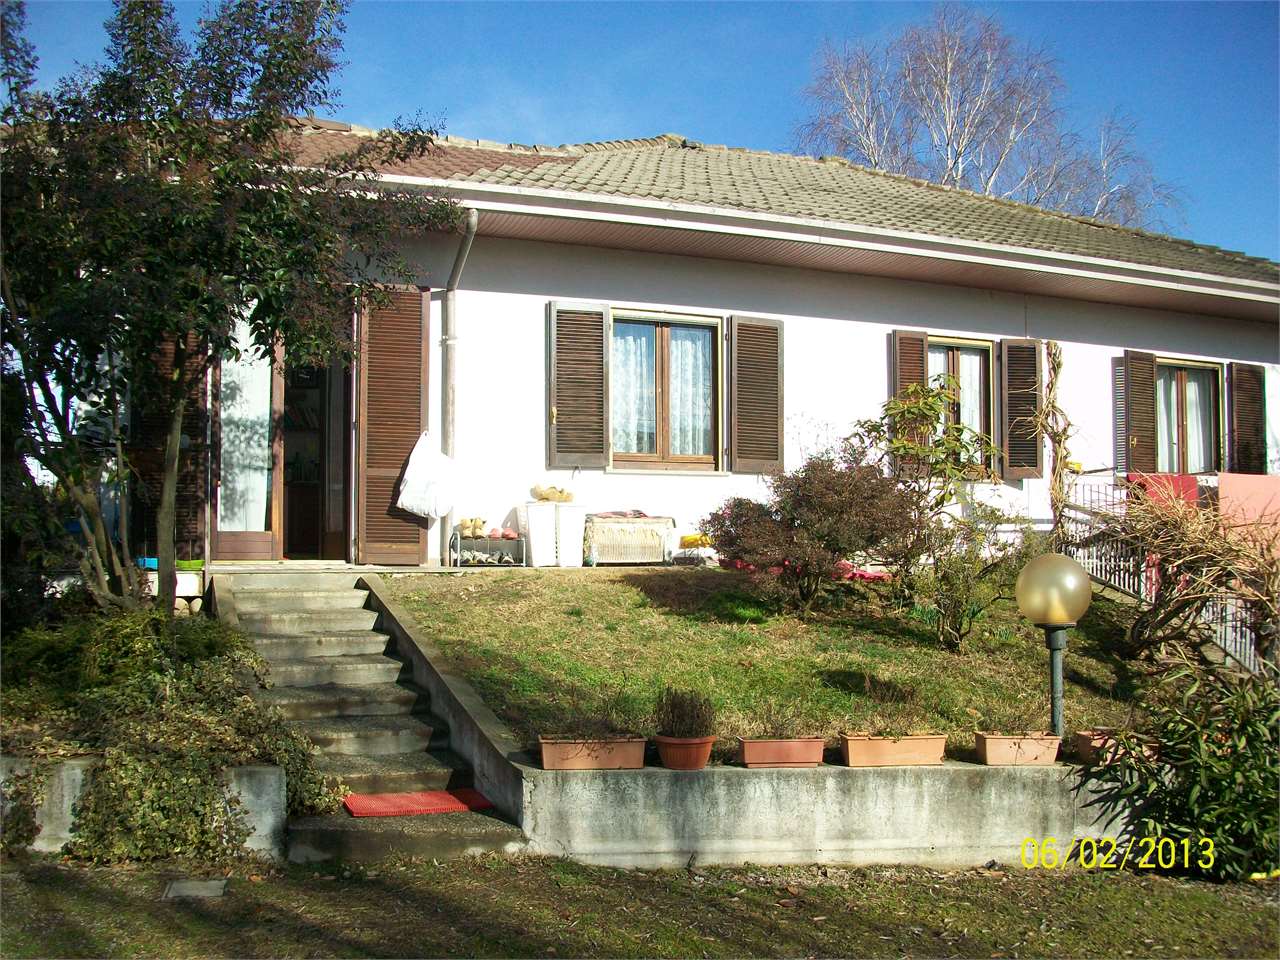 Villa in vendita a Agrate Conturbia, 4 locali, prezzo € 330.000 | CambioCasa.it